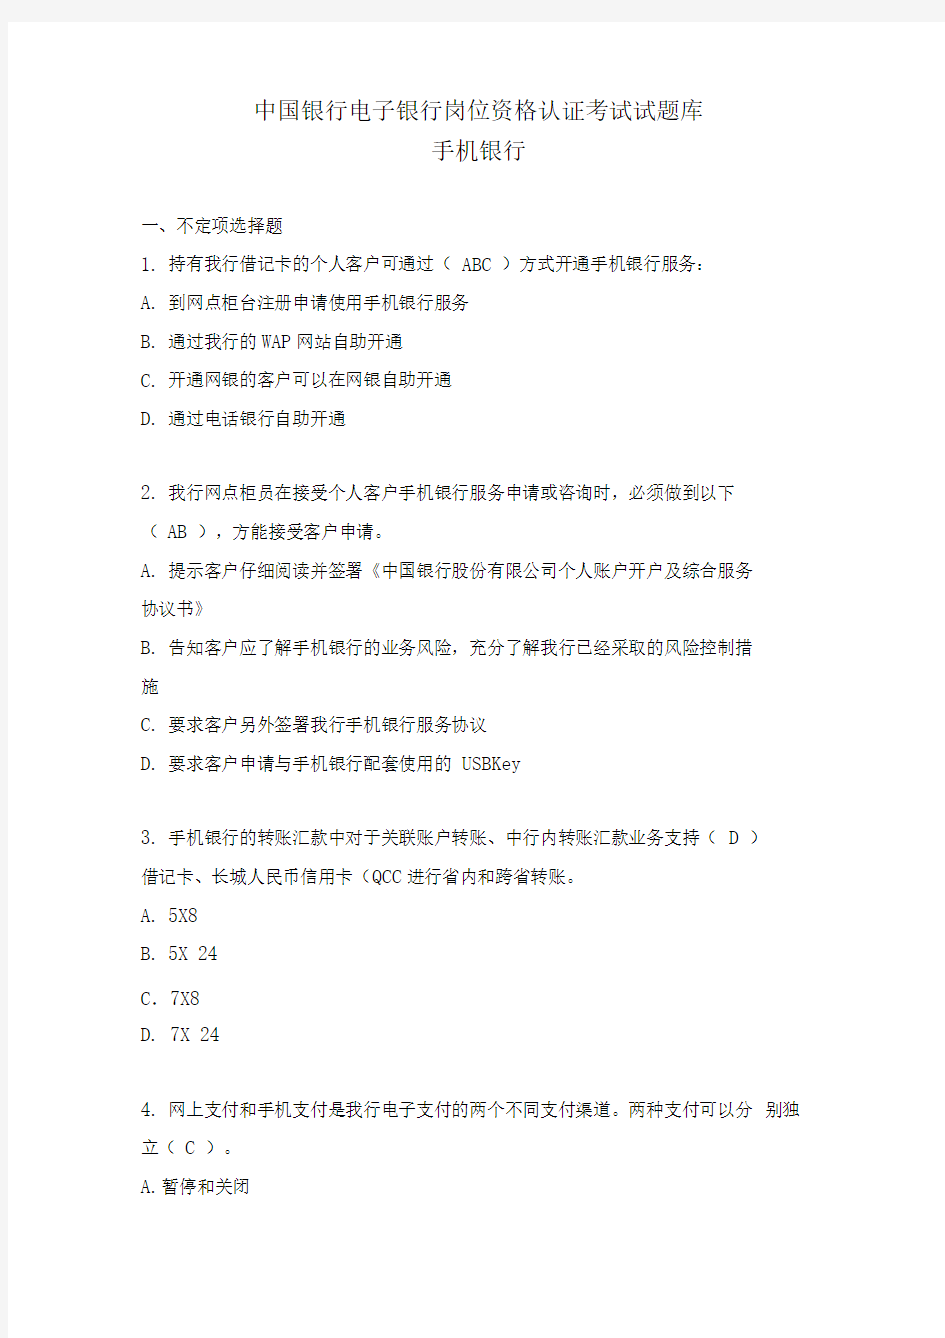 中国银行电子银行岗位认证考题-手机银行资料